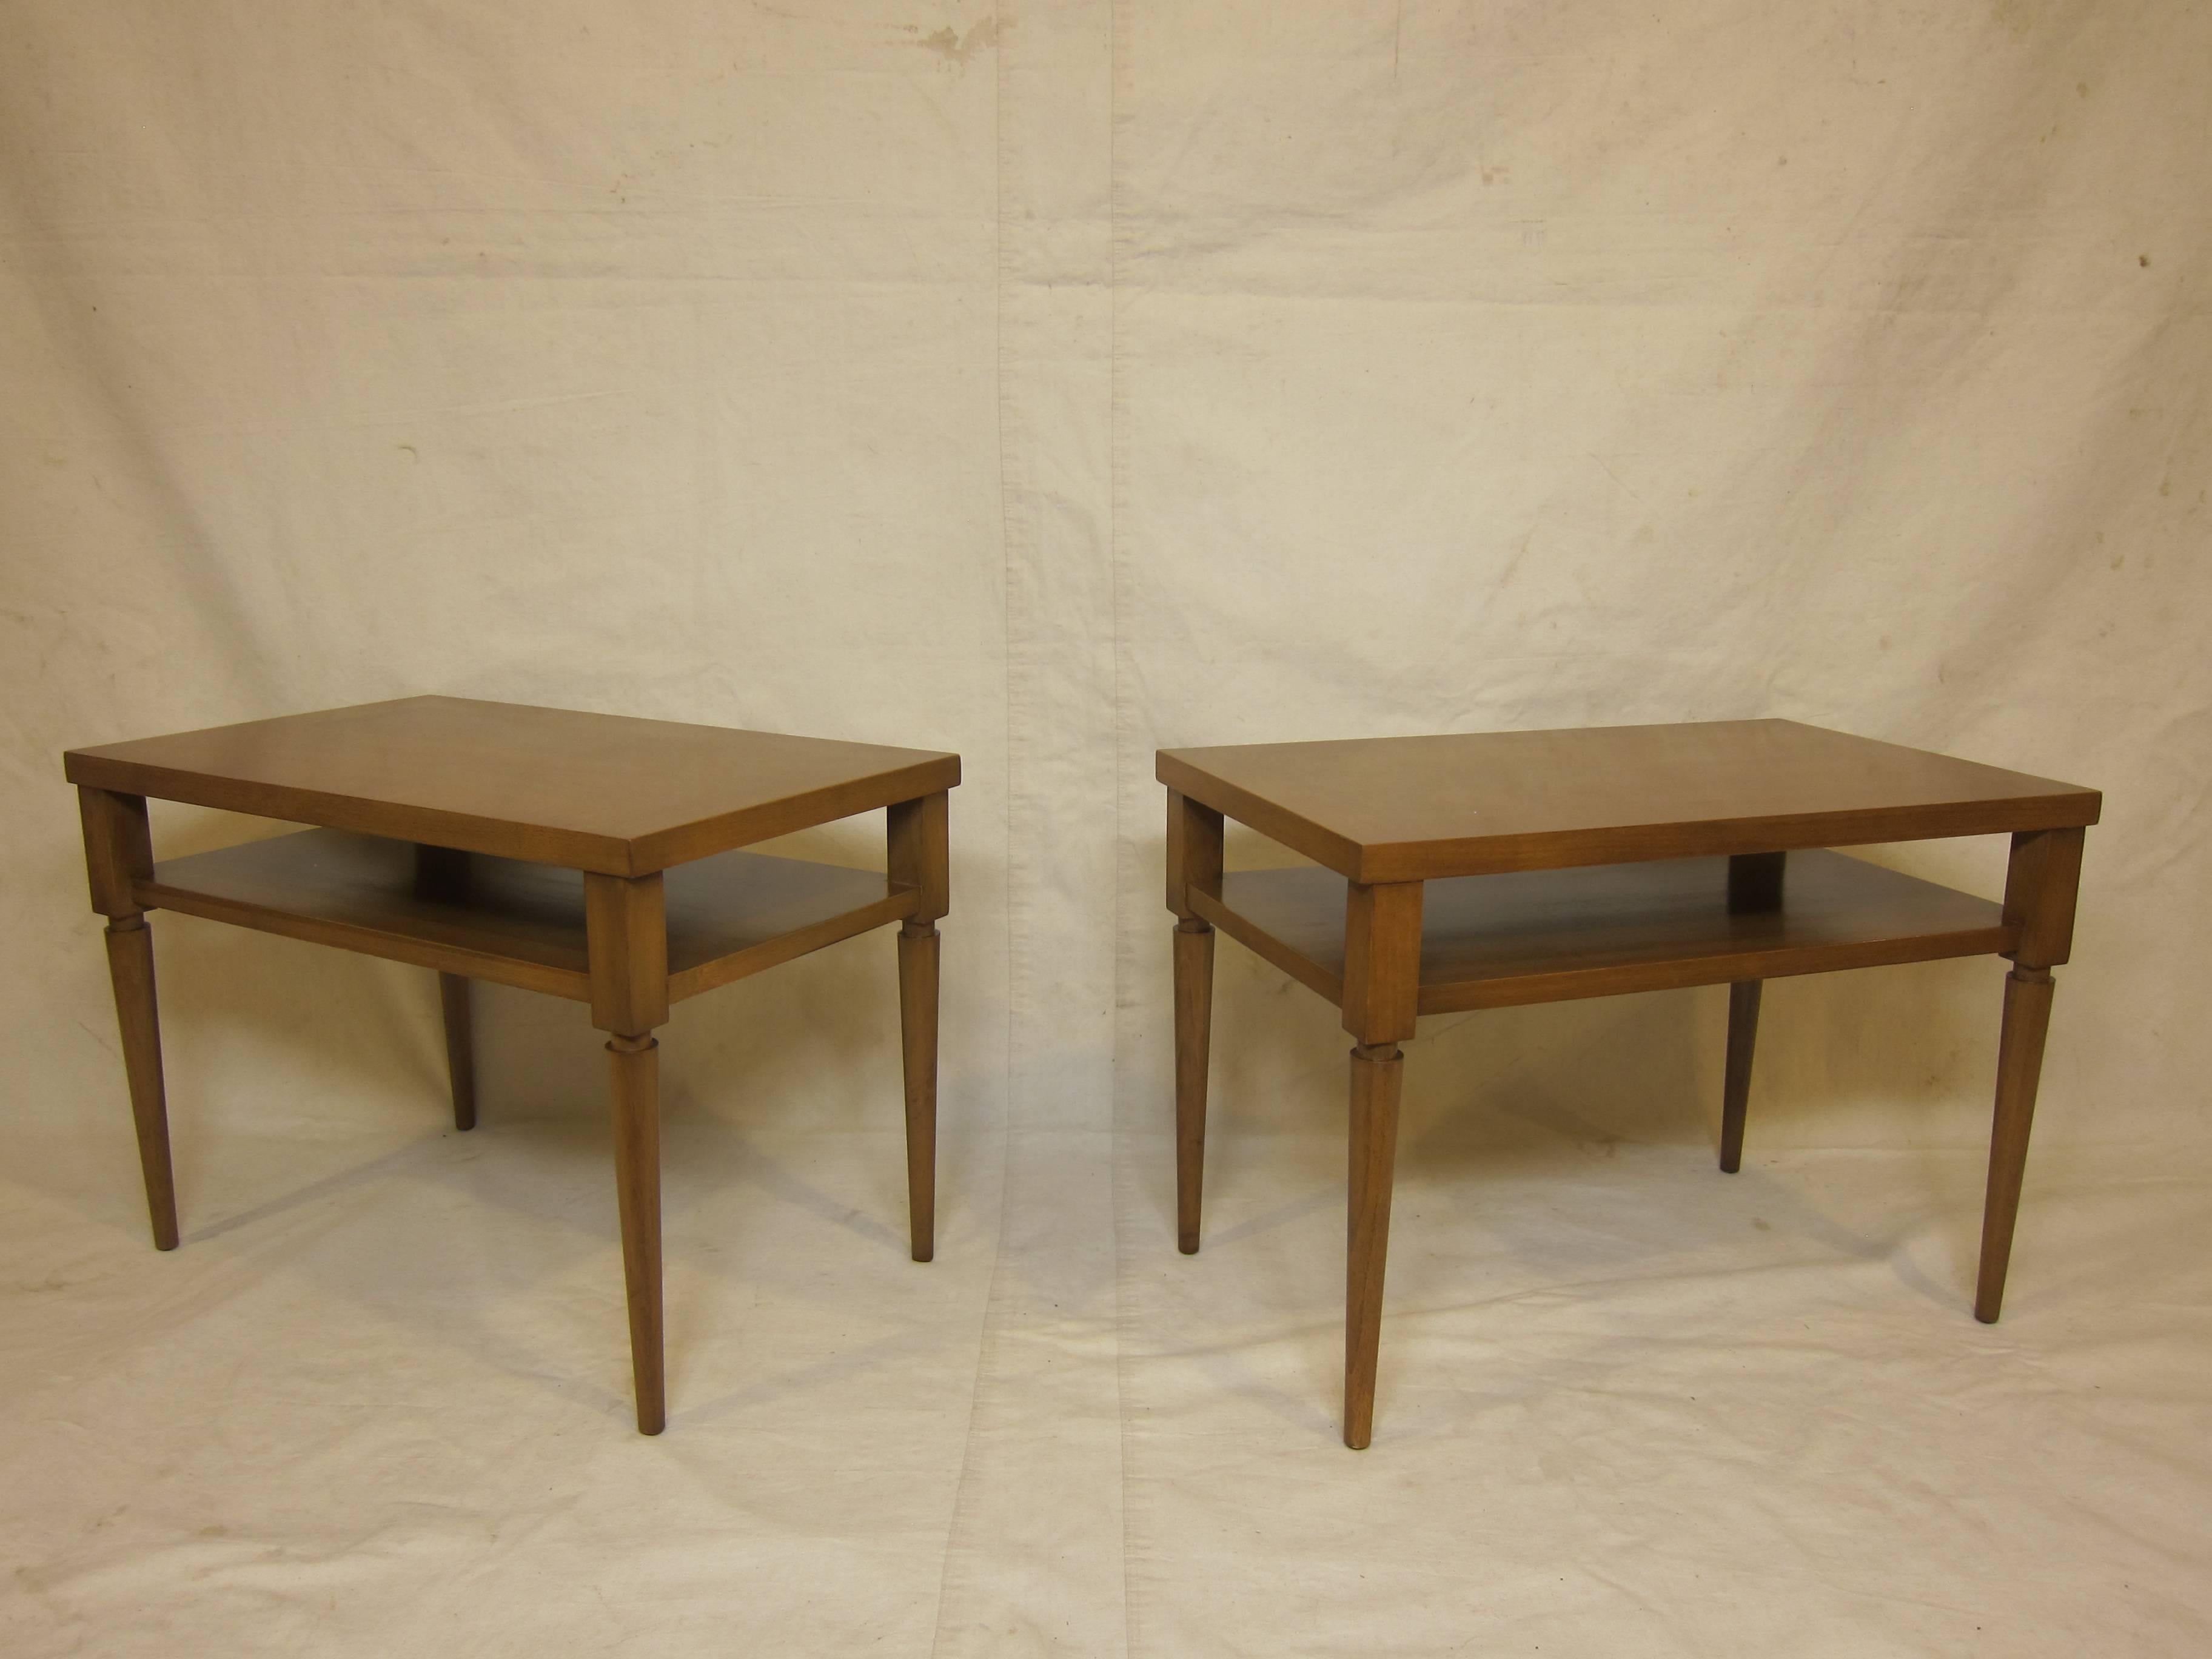 A Pair of Side Tables Designed by Robsjohn Gibbings 1